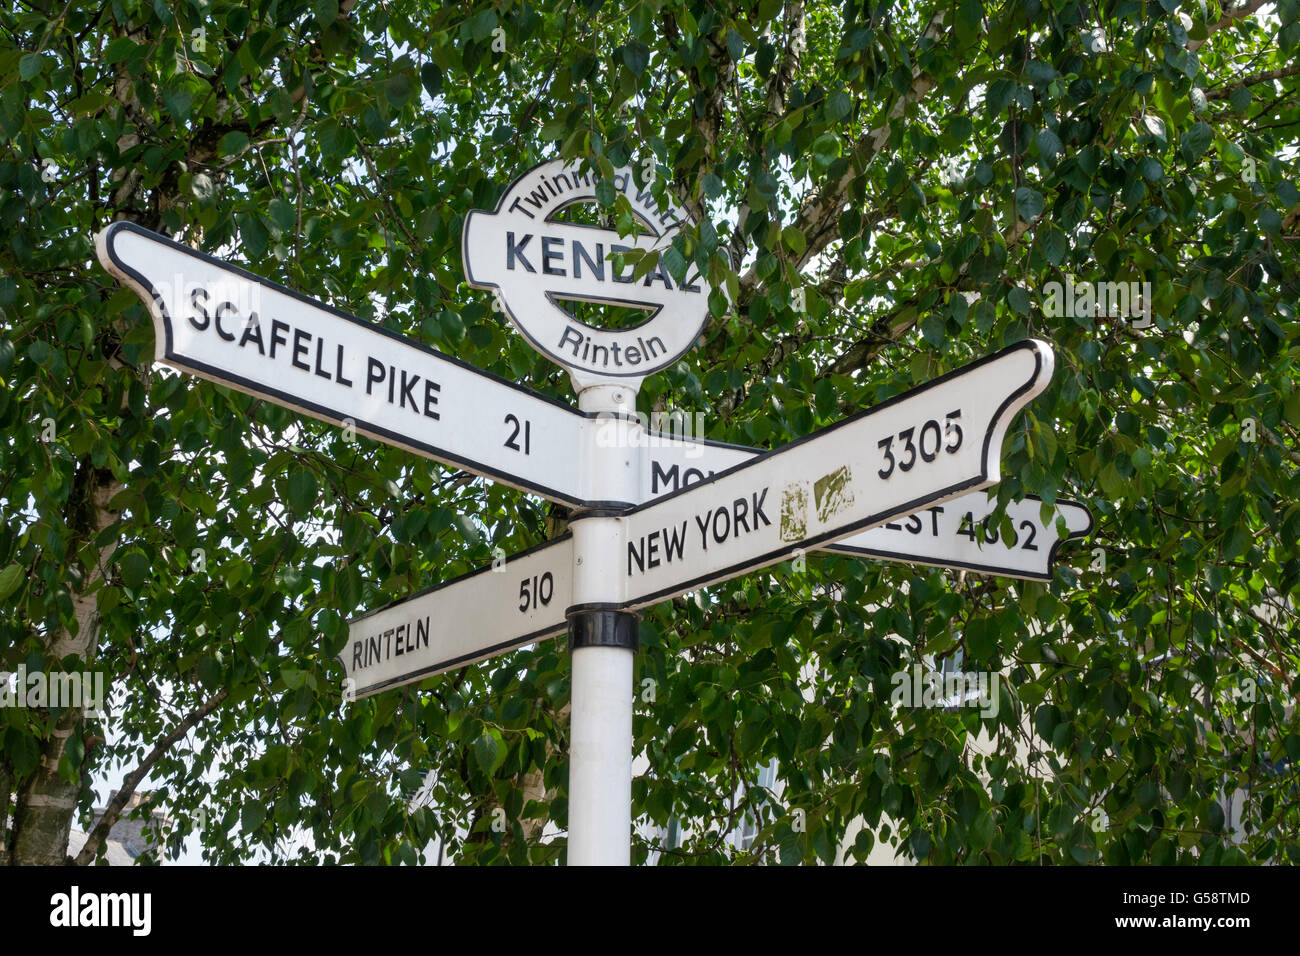 Poteau de signalisation en centre-ville de Windermere Cumbria jumelée avec Rinteln Rinteln allemand distances à New York l'Everest Scafell Pike Banque D'Images